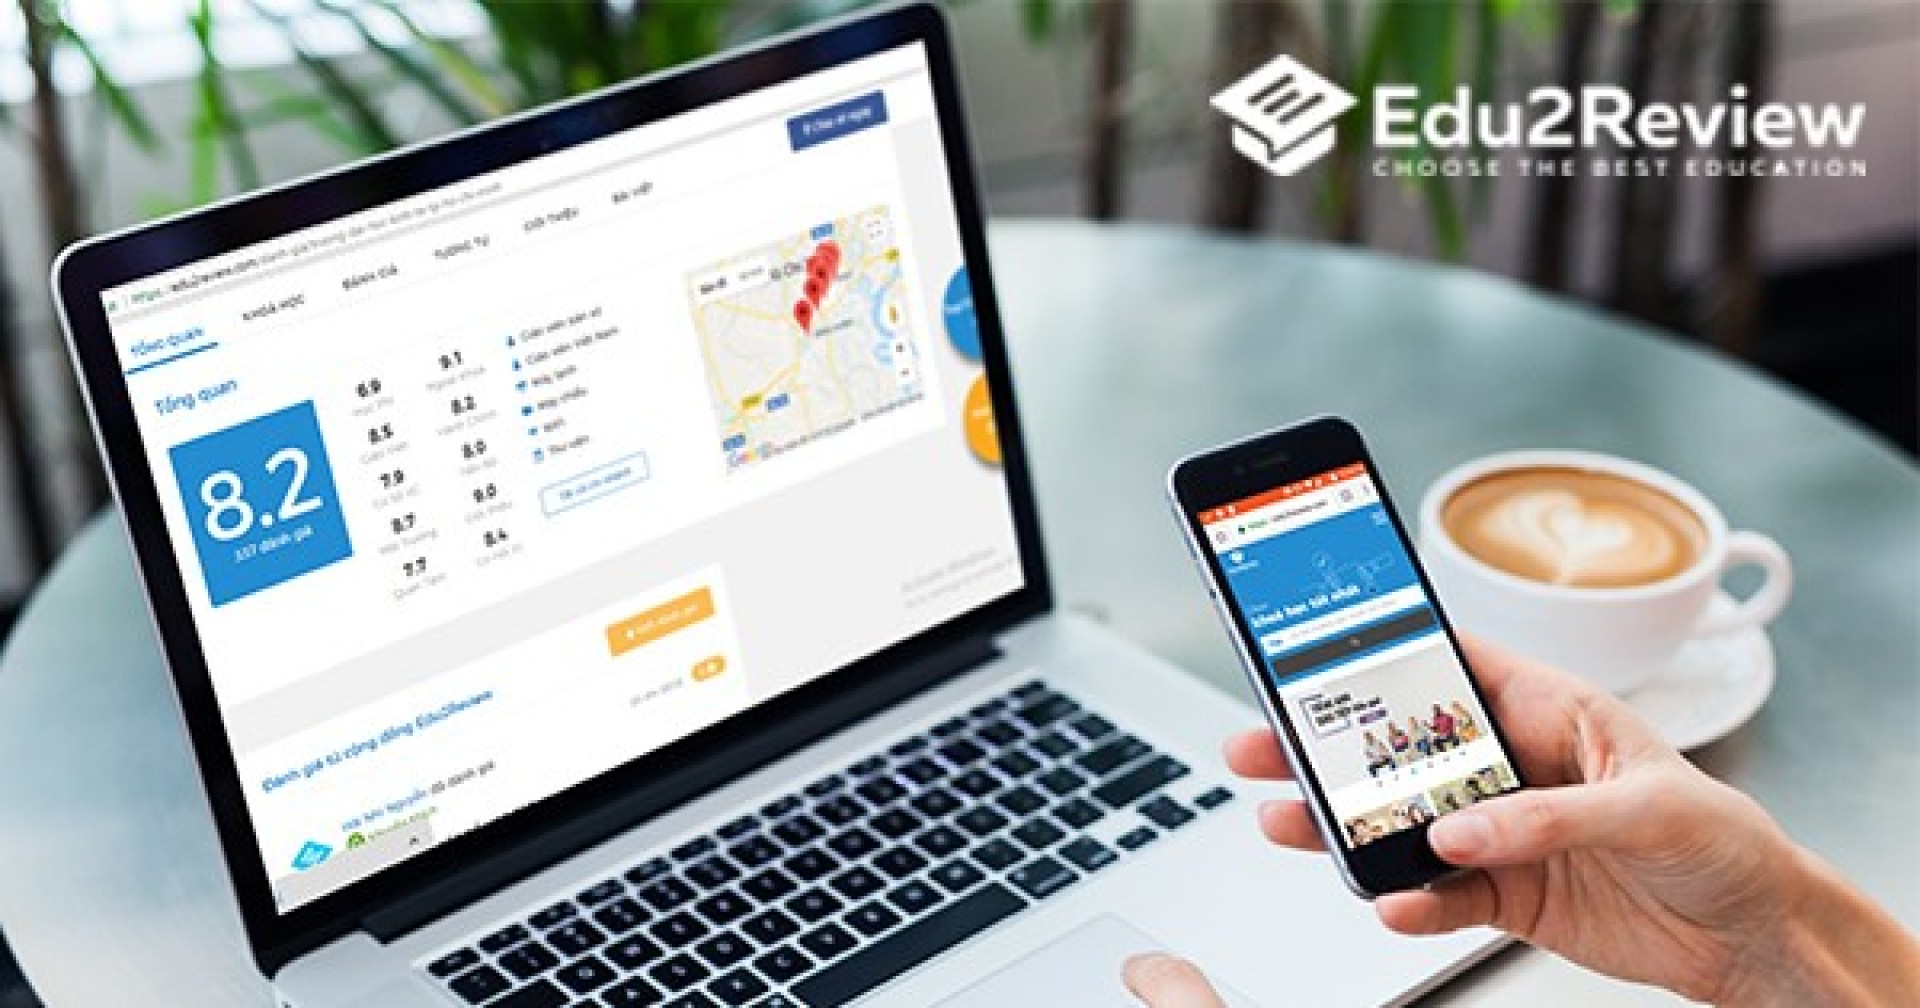 Nền tảng đánh giá giáo dục và đặt chỗ khoá học trực tuyến Edu2Review nhận được đầu tư từ Singapore